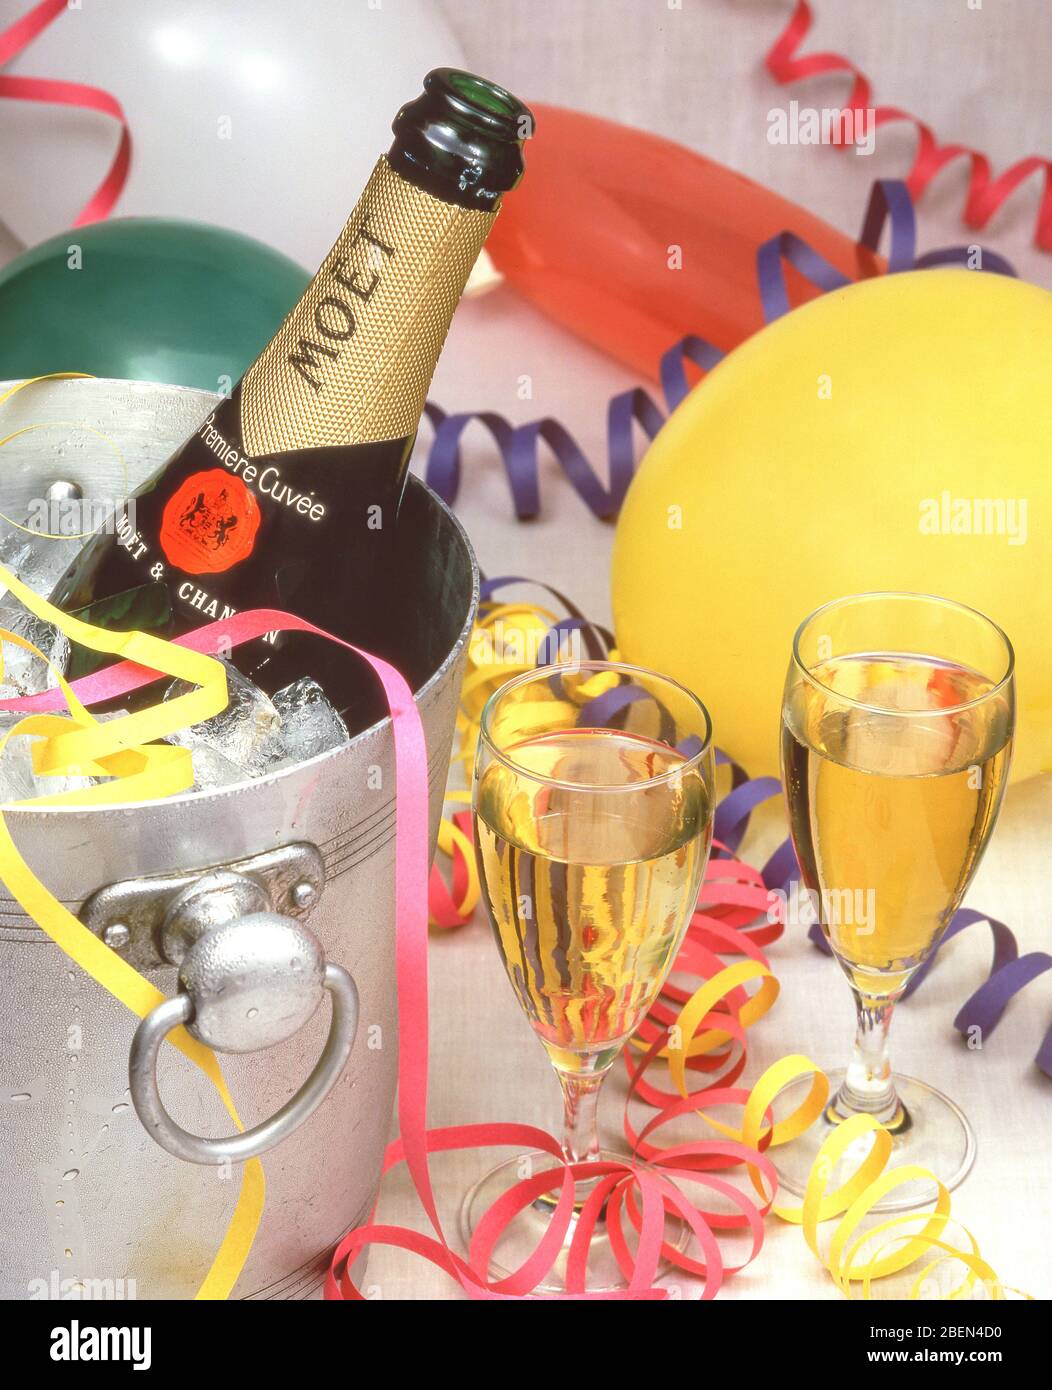 Moët champagne nel secchio con bandiere e palloncini, London, England, Regno Unito Foto Stock